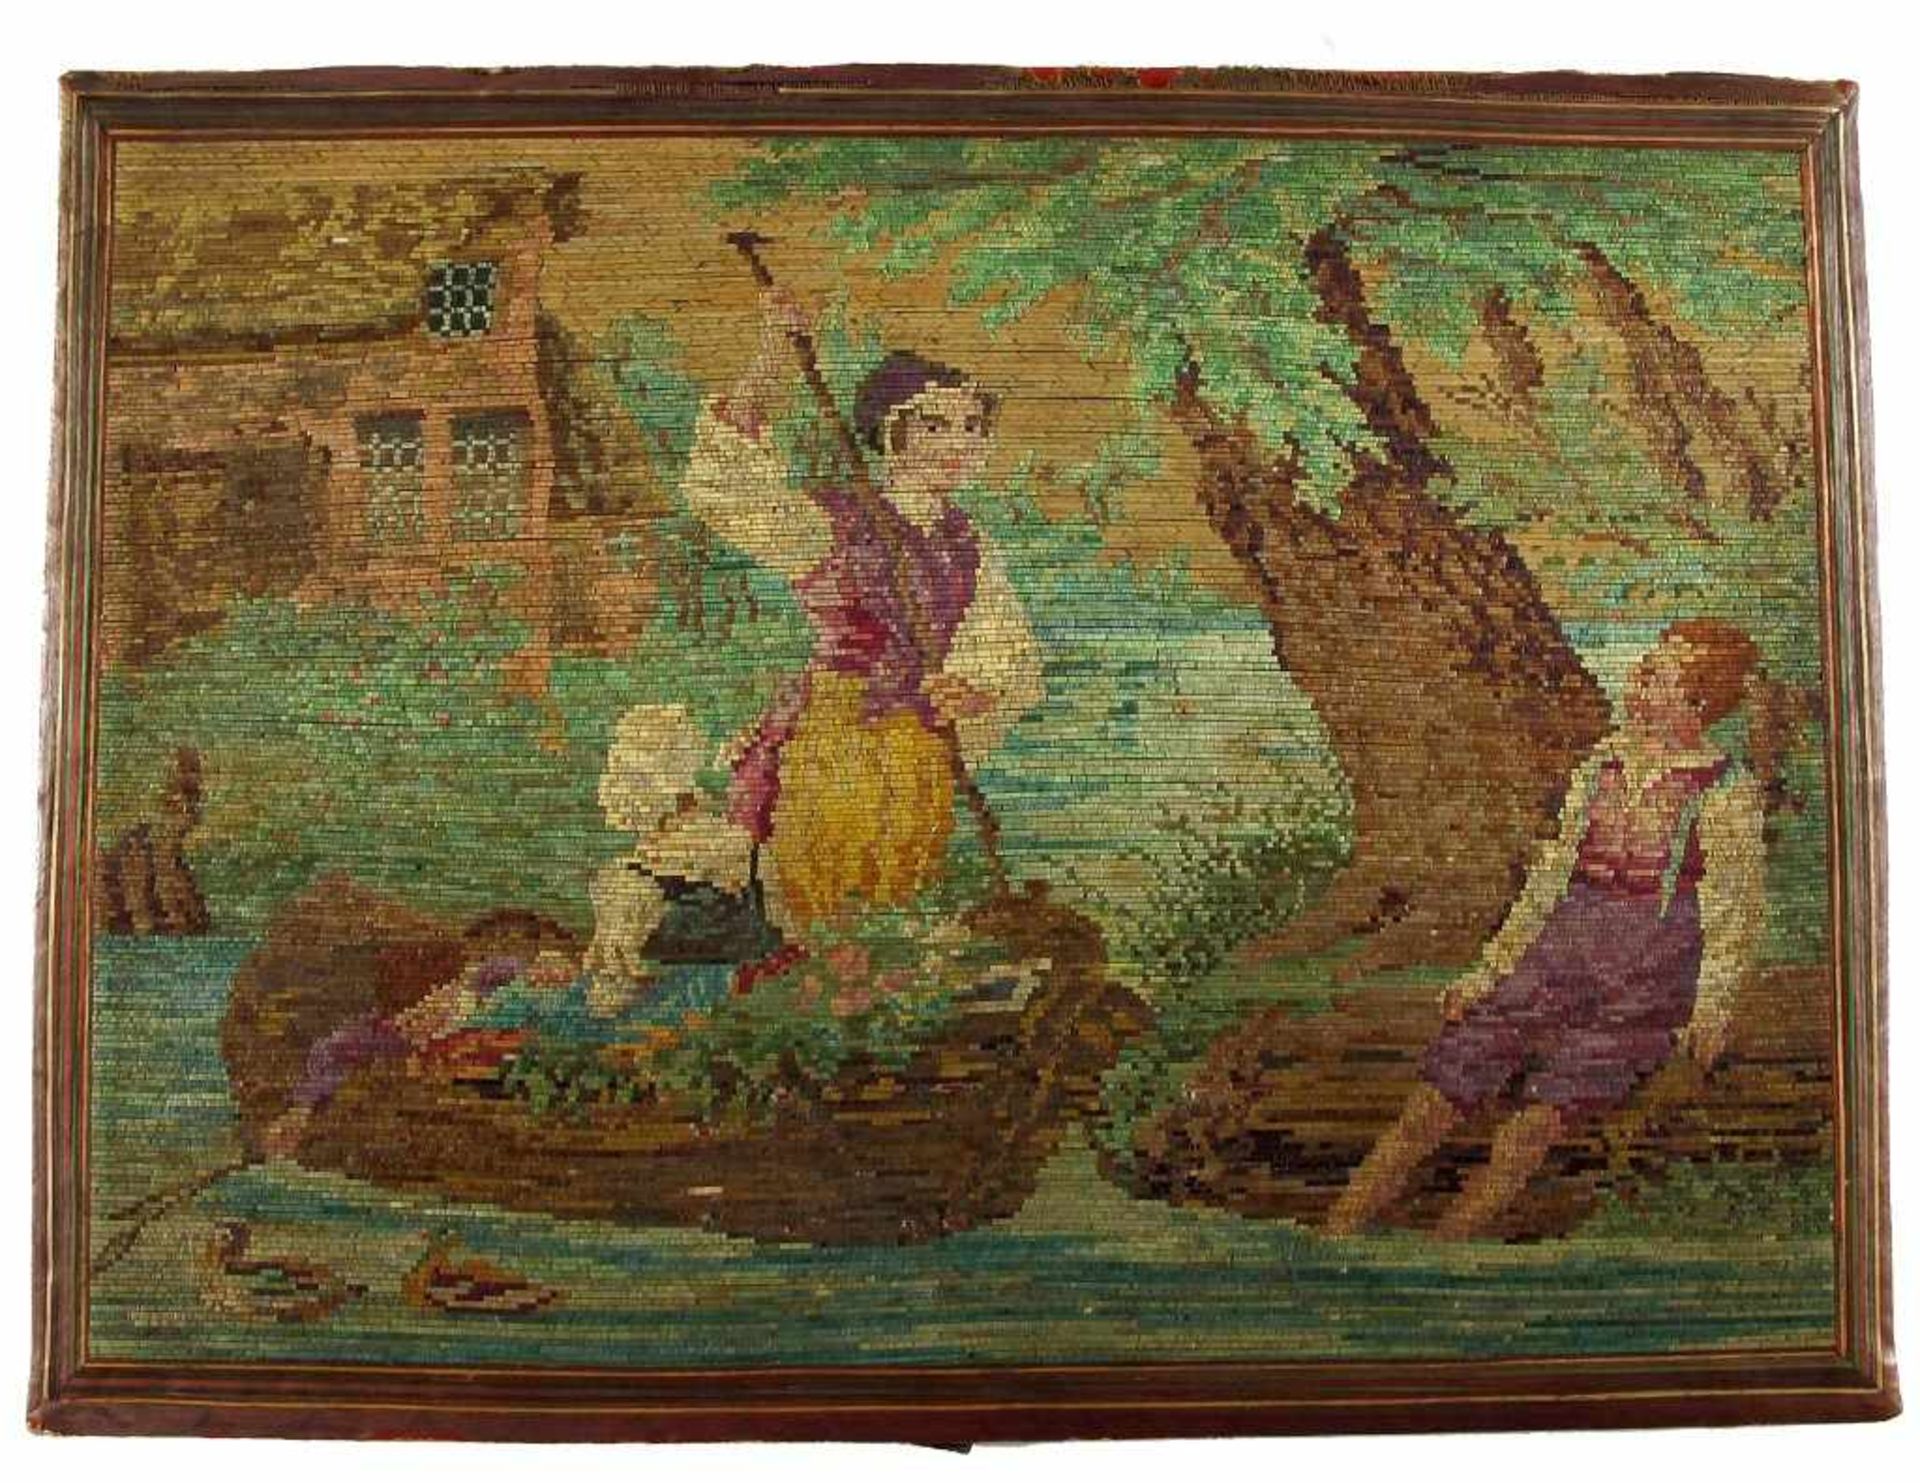 Polychromes Strohbild. Übersetzendes Boot auf einem Fluss. 19. Jh. 16,5 x 22,5 cm